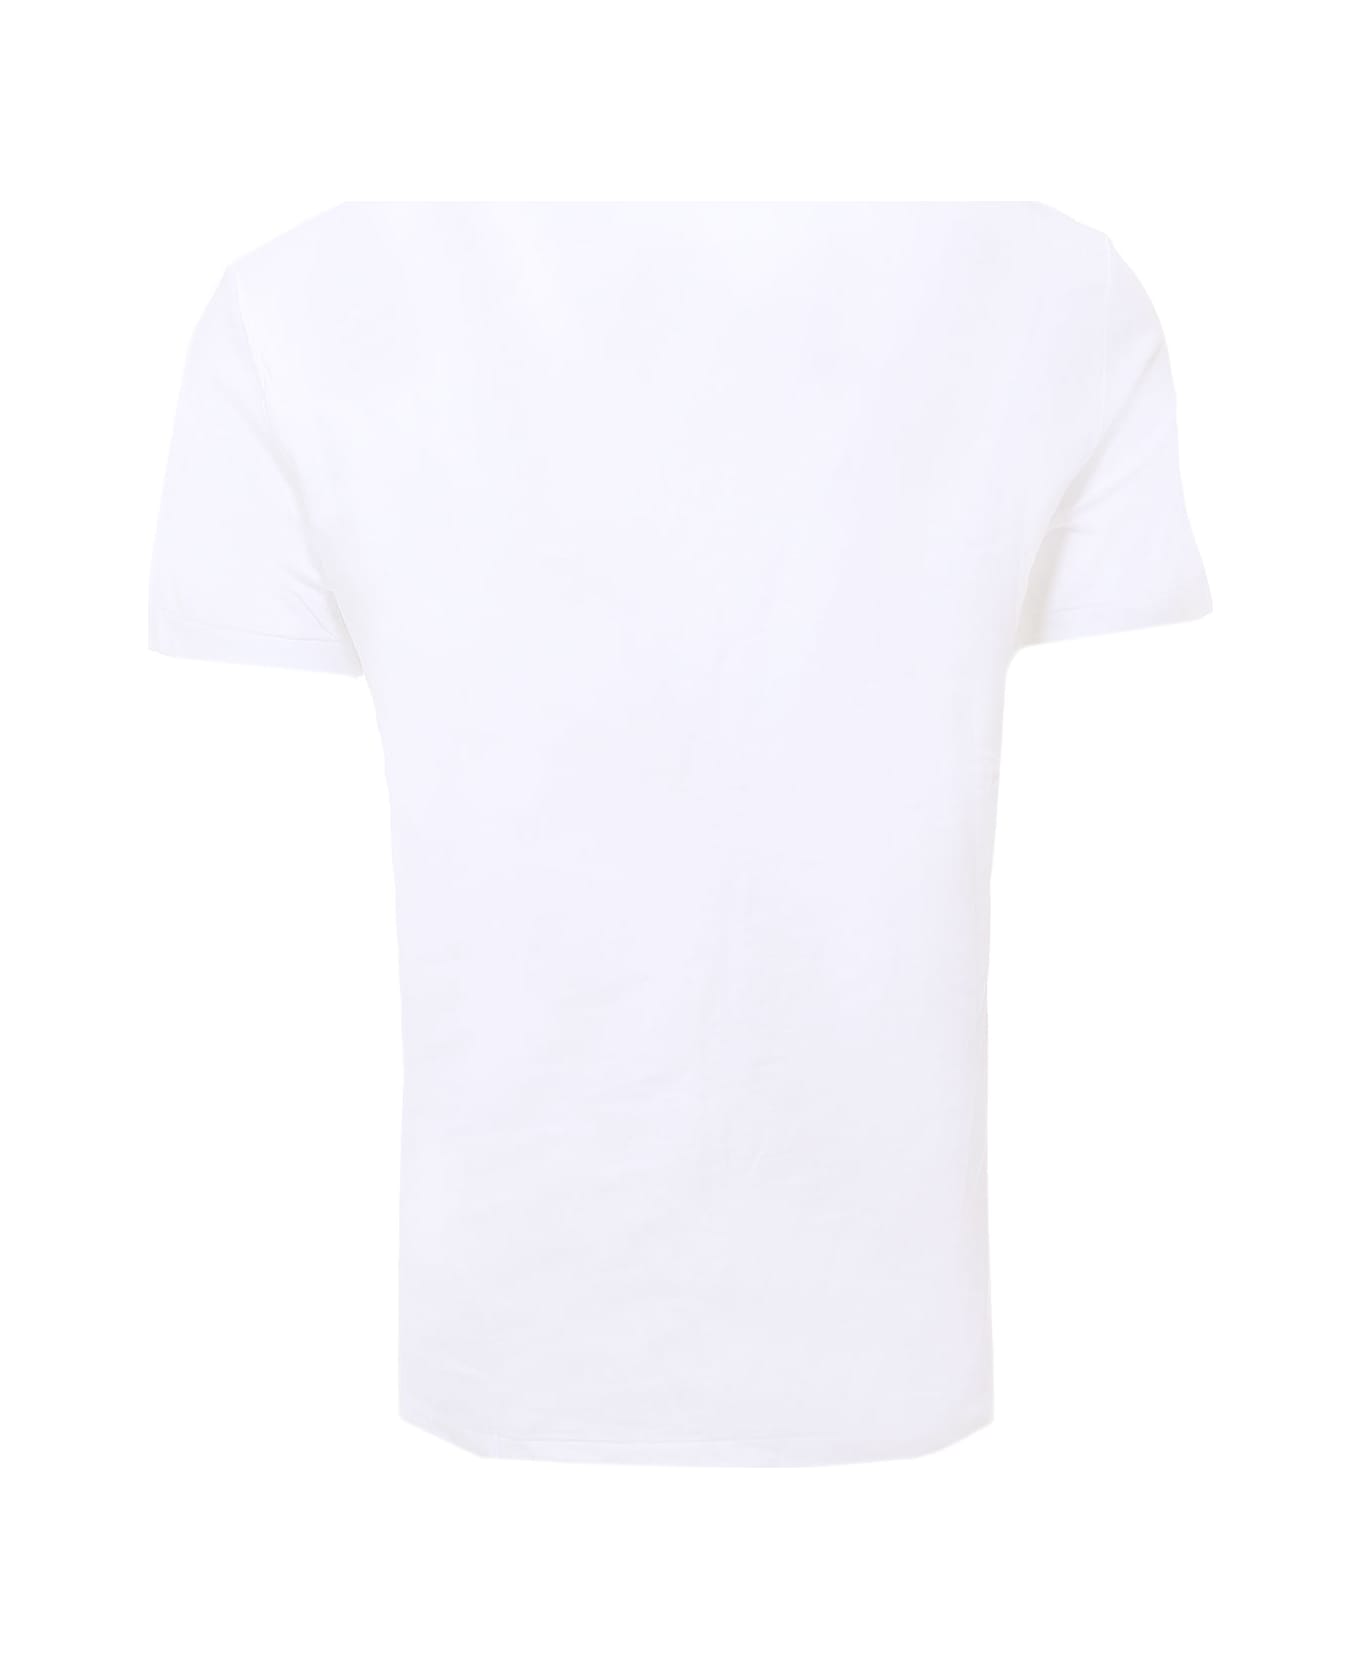 Polo Ralph Lauren T-shirt Polo Ralph Lauren - WHITE シャツ